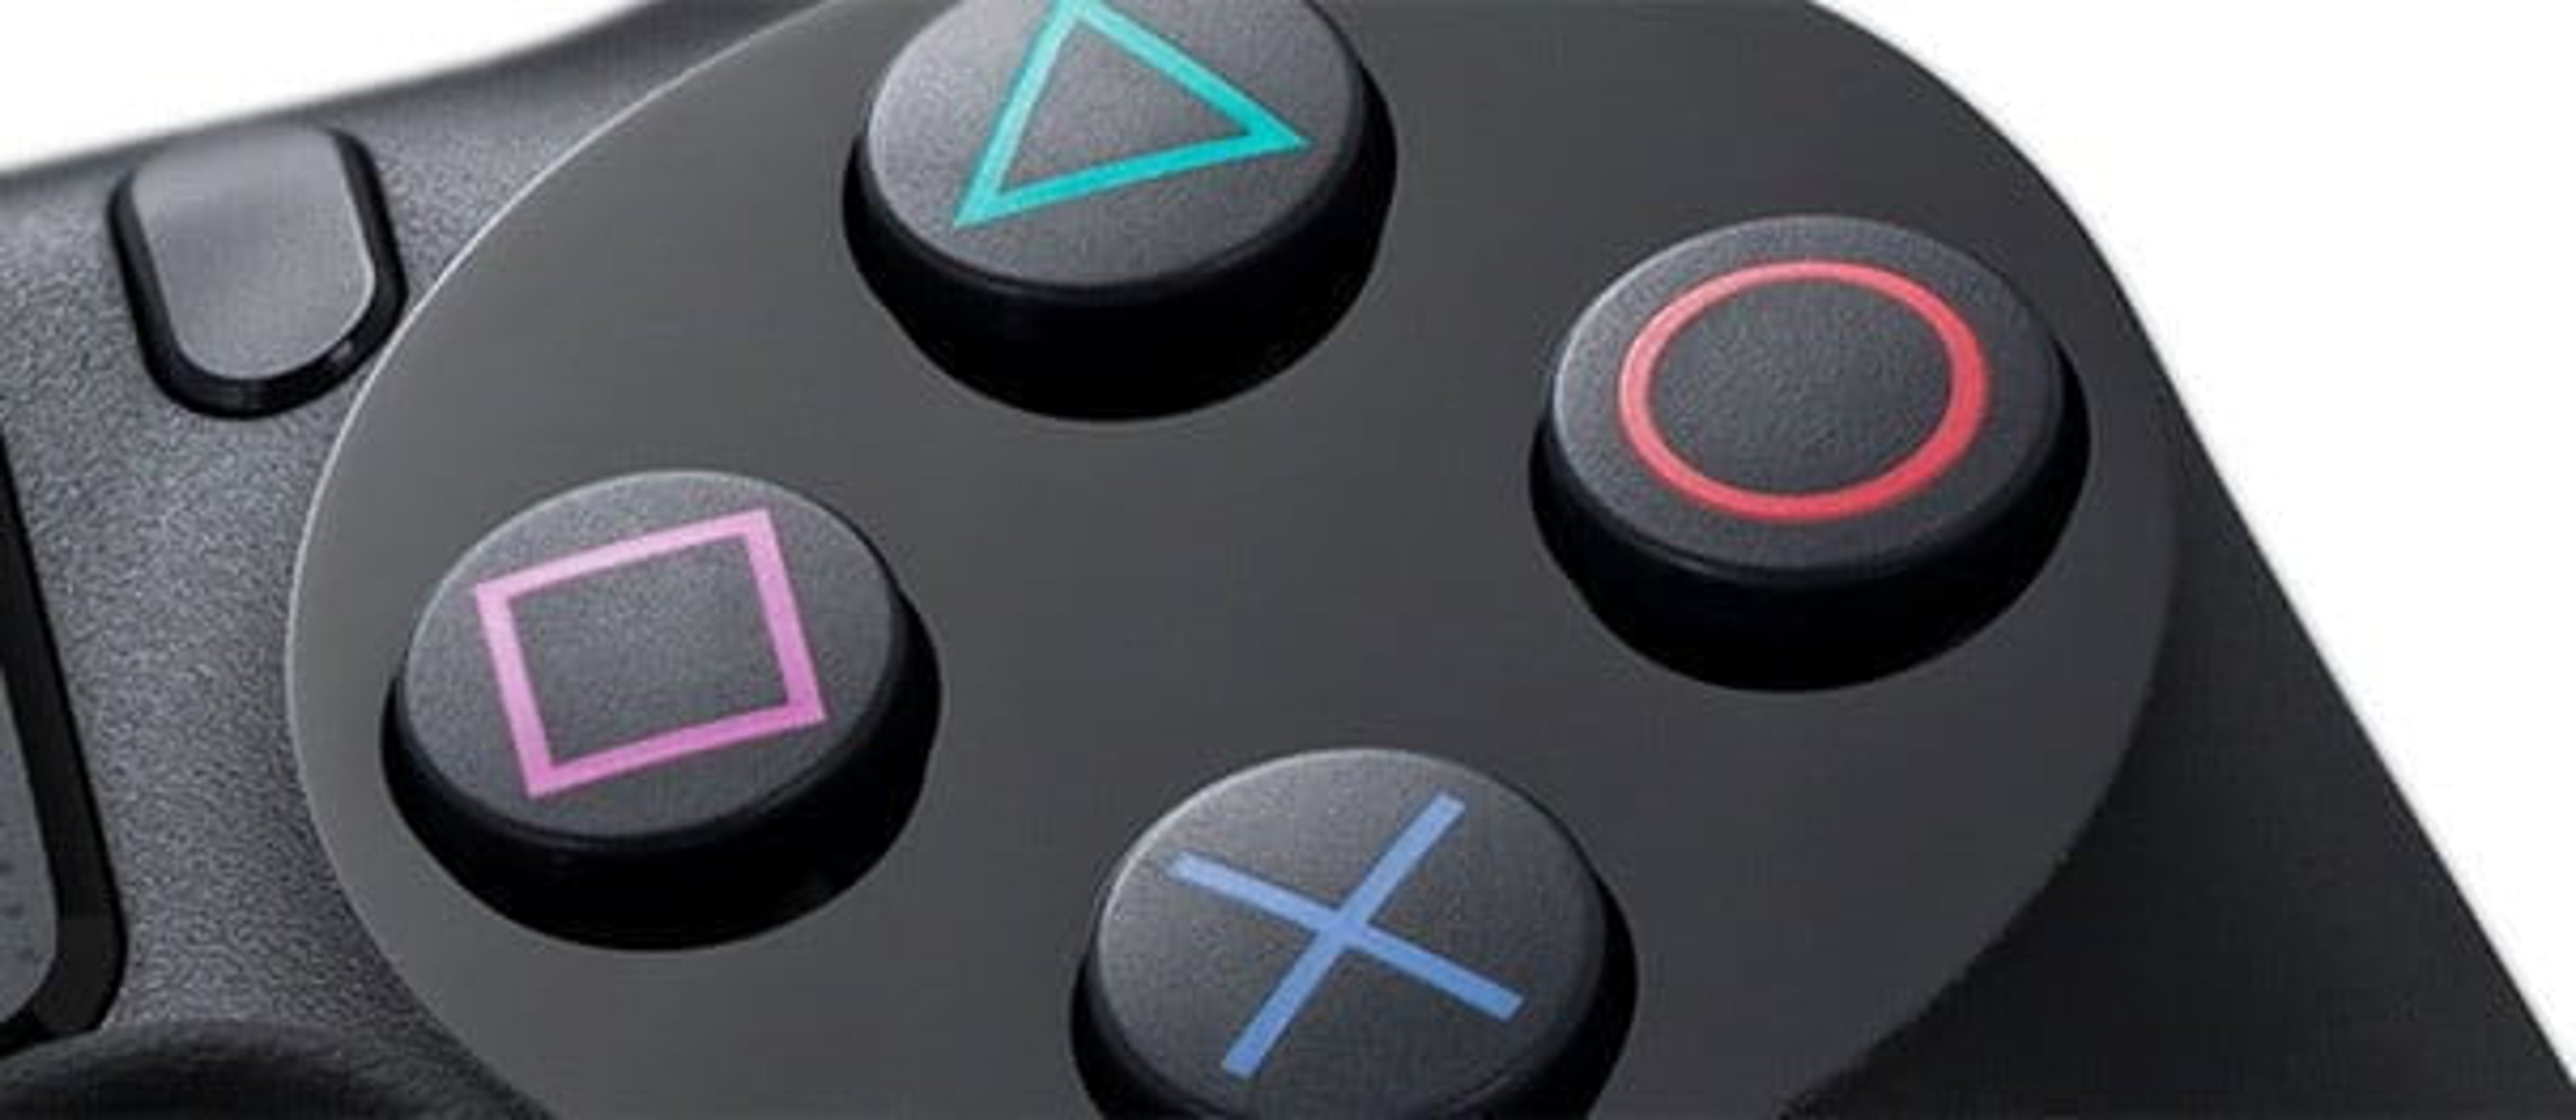 PlayStation 4 Neo e Play 4 stessi giochi, la conferma arriva da Sony!